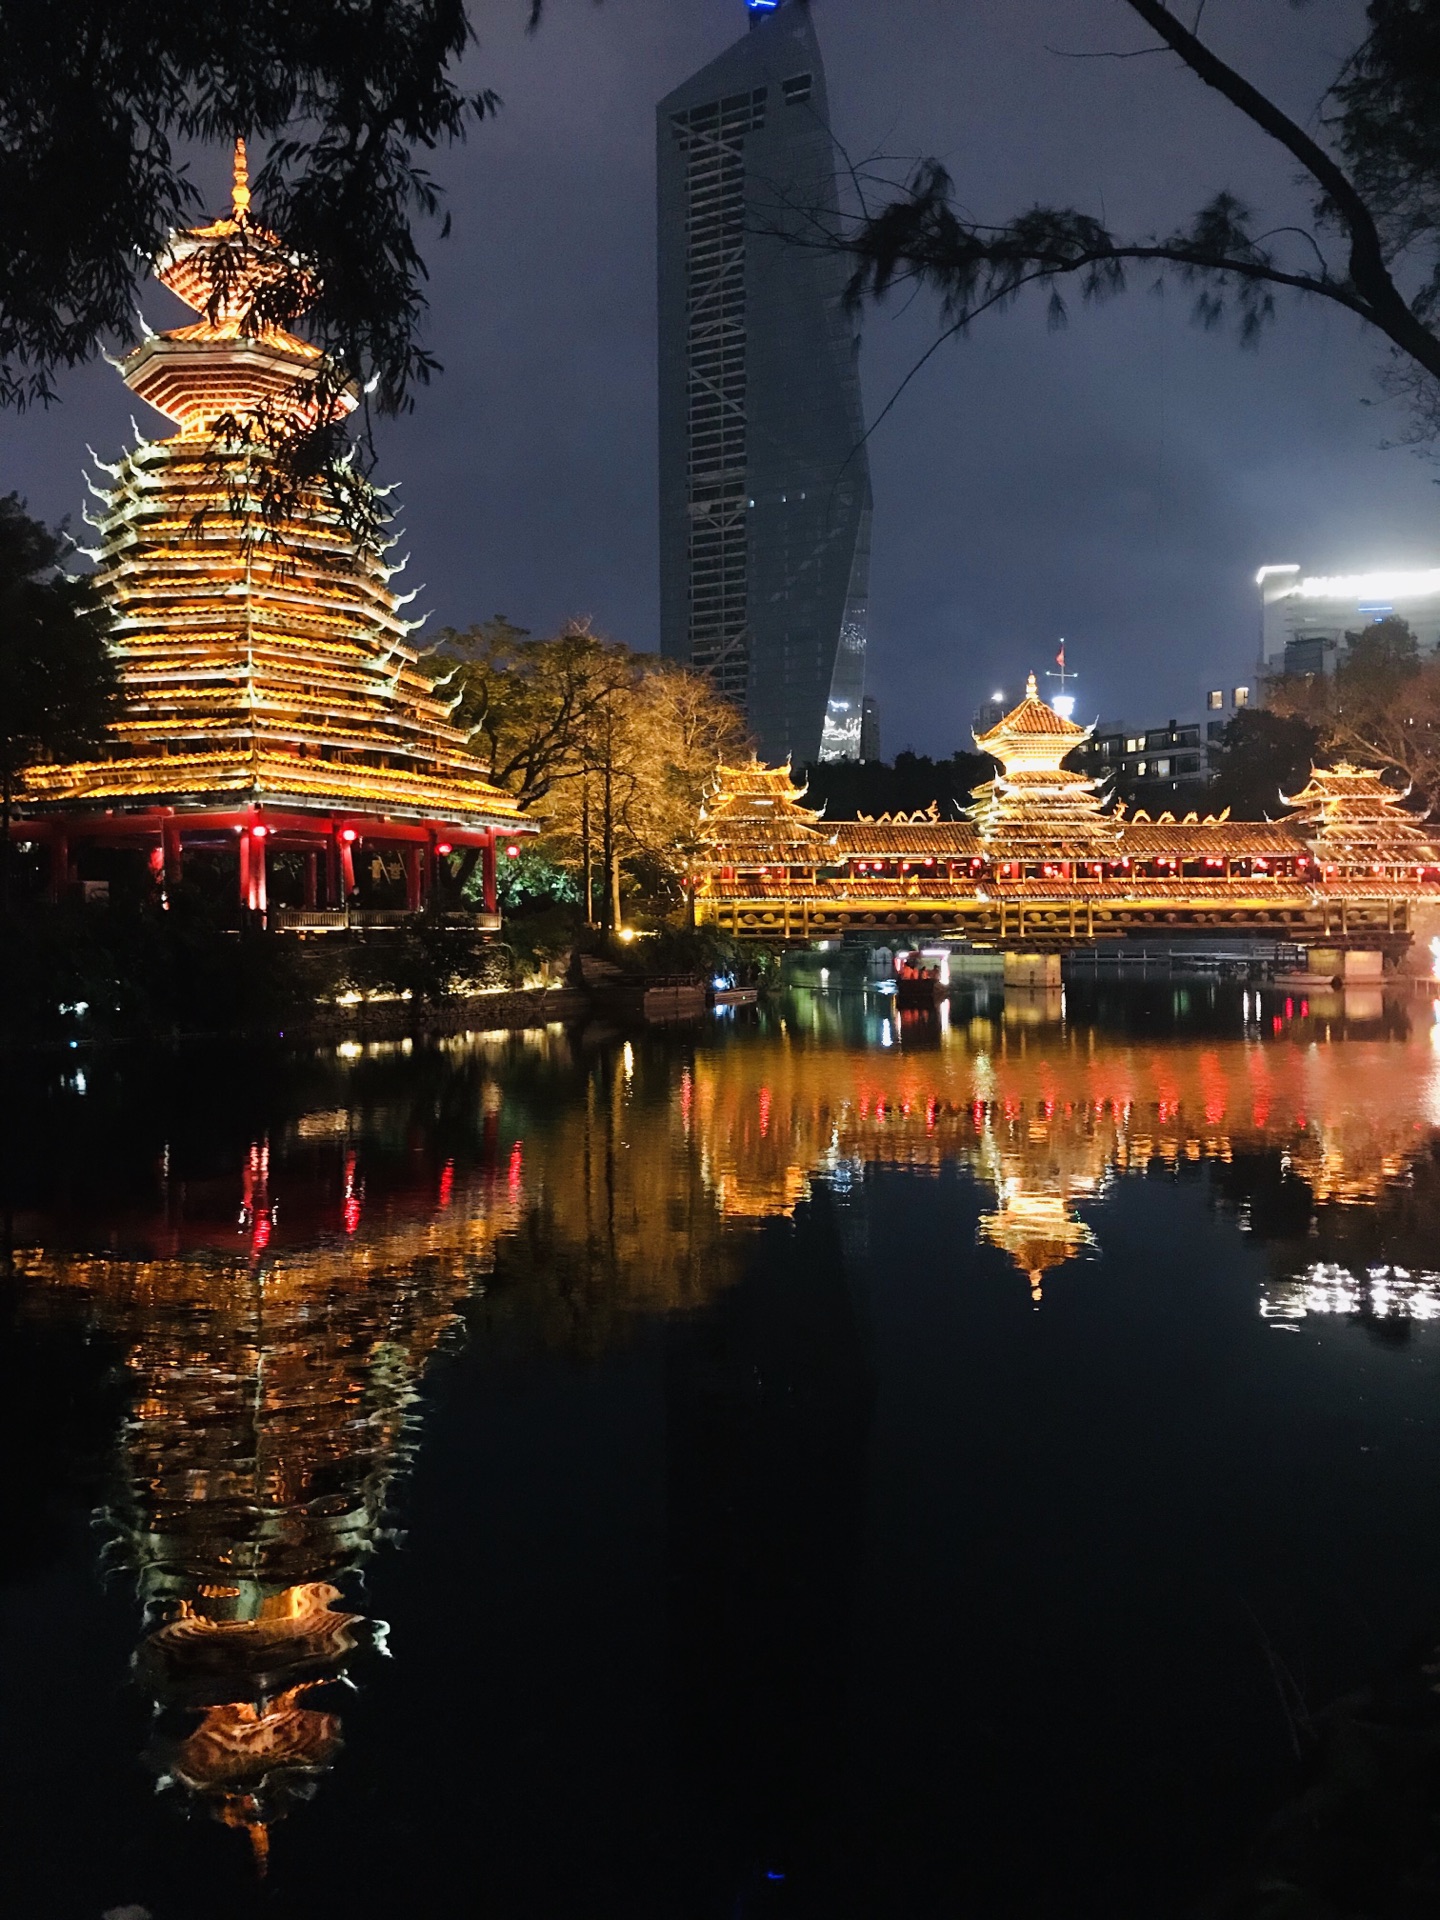 【携程攻略】深圳锦绣中华民俗村景点,内含夜场提示。 锦绣中华，世界之窗的兄弟景点，同为华侨城的旅游项…